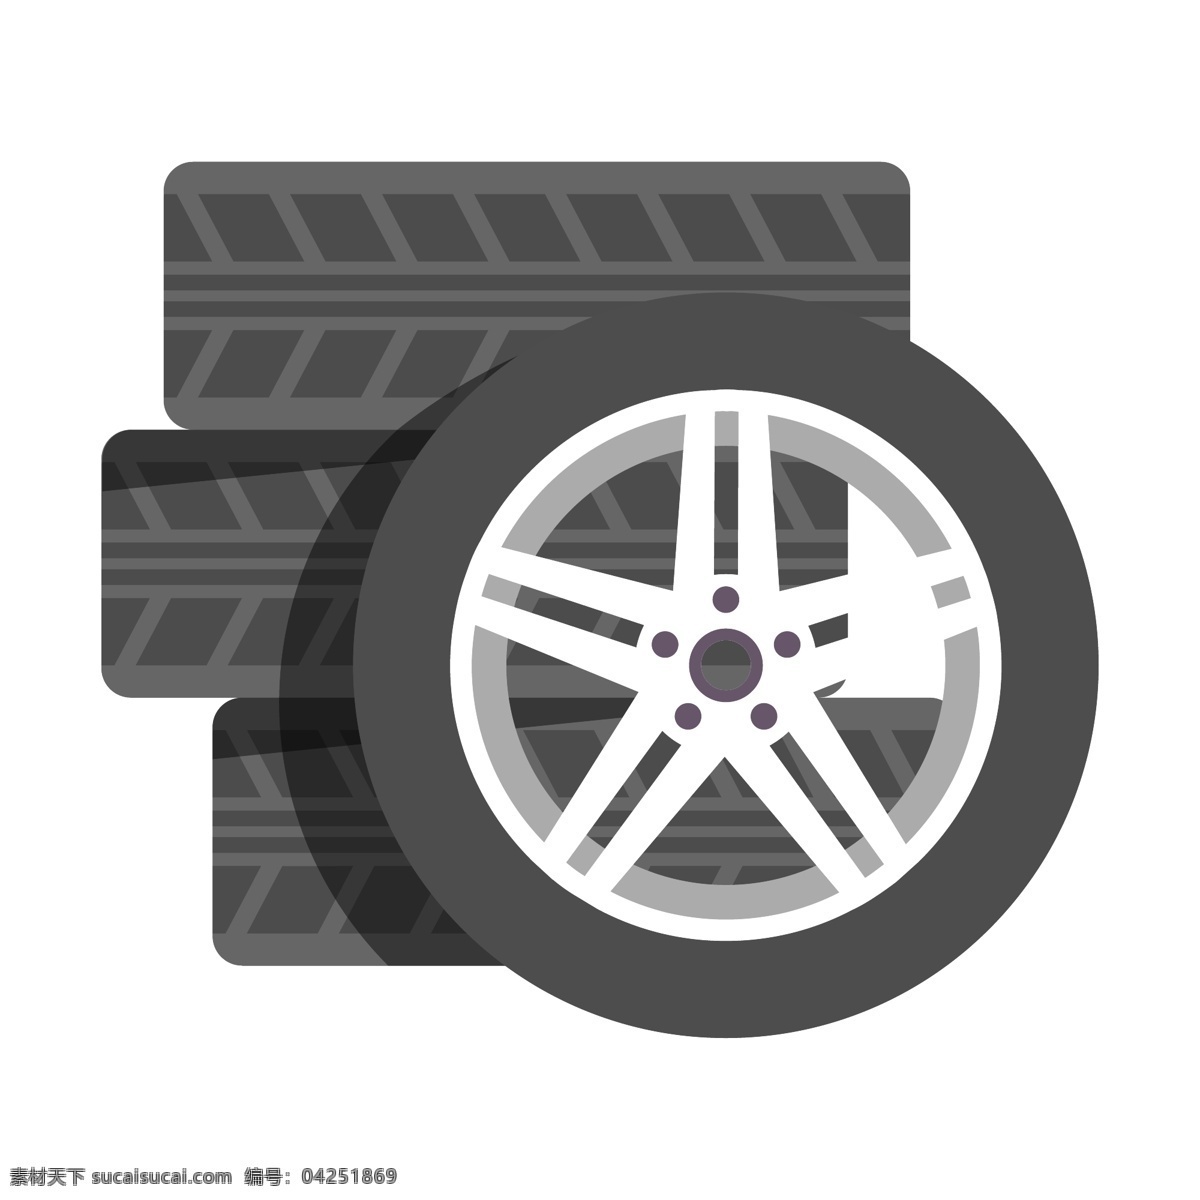 黑色 轮胎 卡通 插画 黑色的轮胎 卡通轮胎 圆形轮胎 交通工具 汽车配件 零件 轮胎装饰 轮胎插画